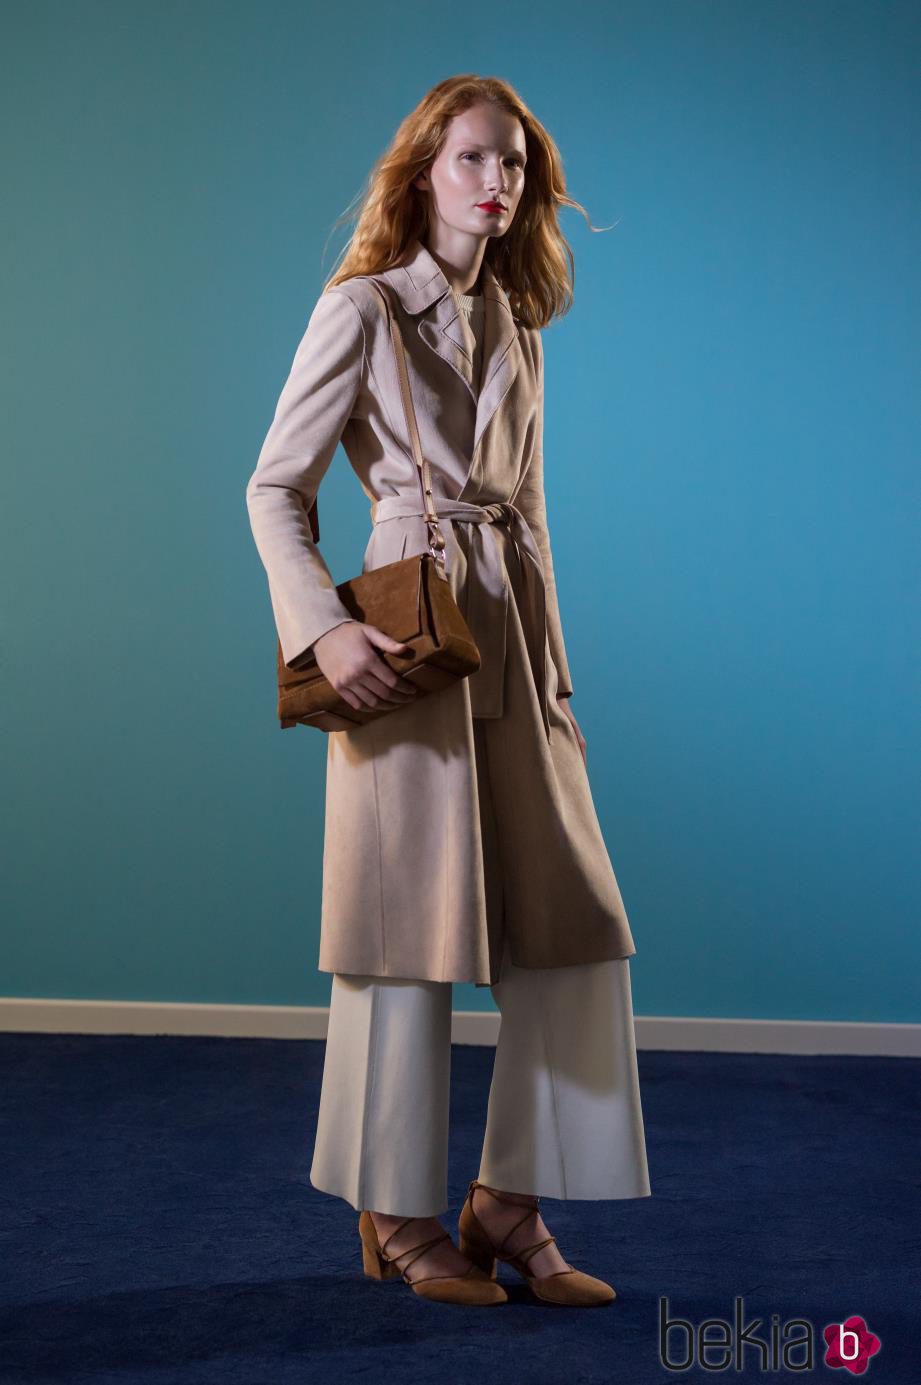 Maxi abrigo arena y bolso marrón de ante de la colección 'Espejismo de verano' de Adolfo Dominguez